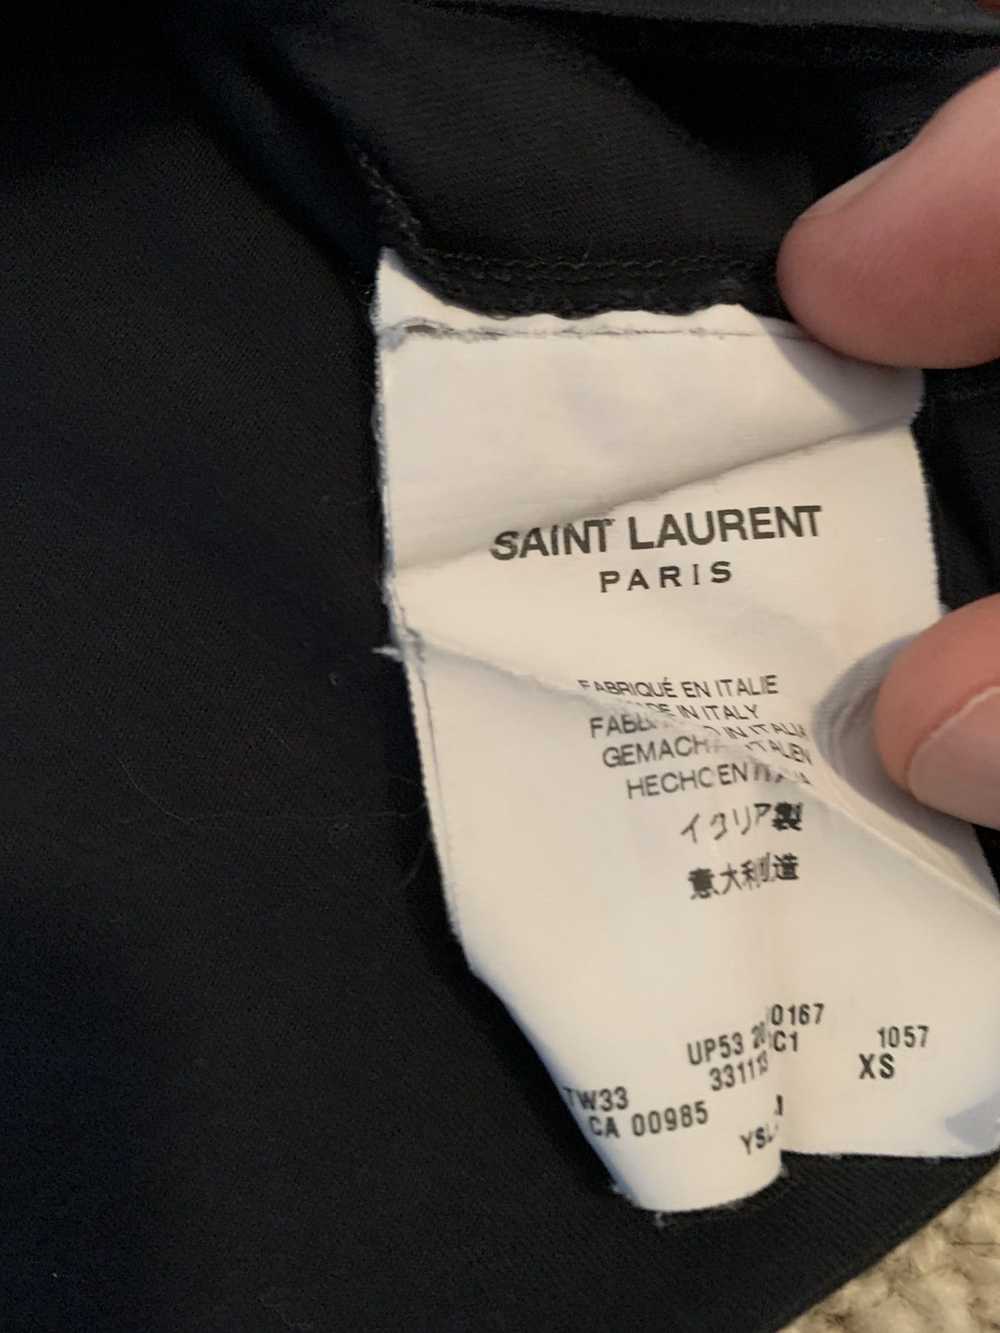 Saint Laurent Paris Saint Laurent car t shirt 2015 - image 3